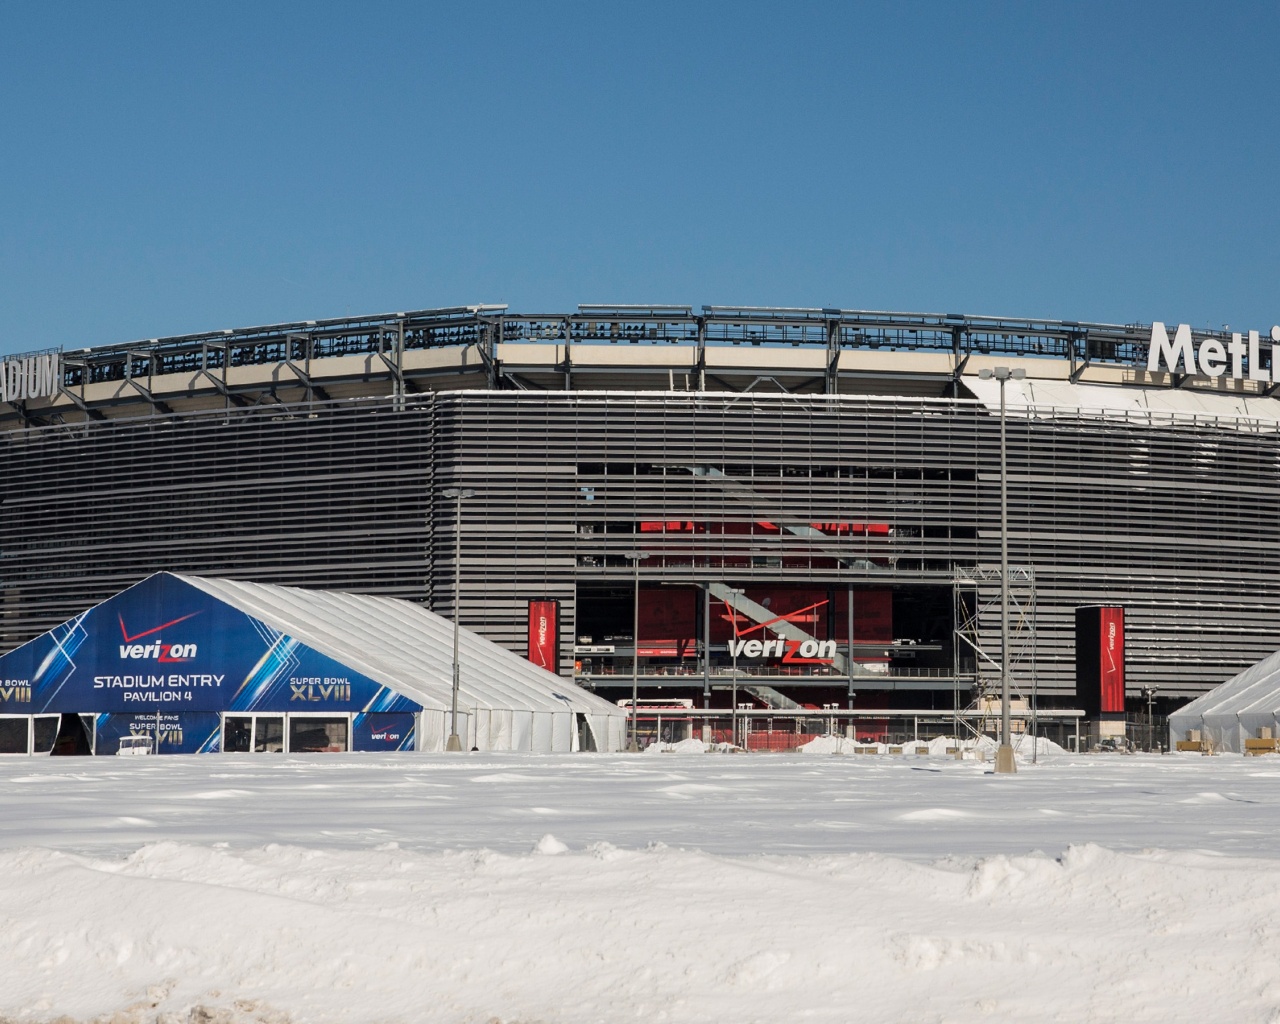 MetLife Stadium Snow-Super Bowl 2014